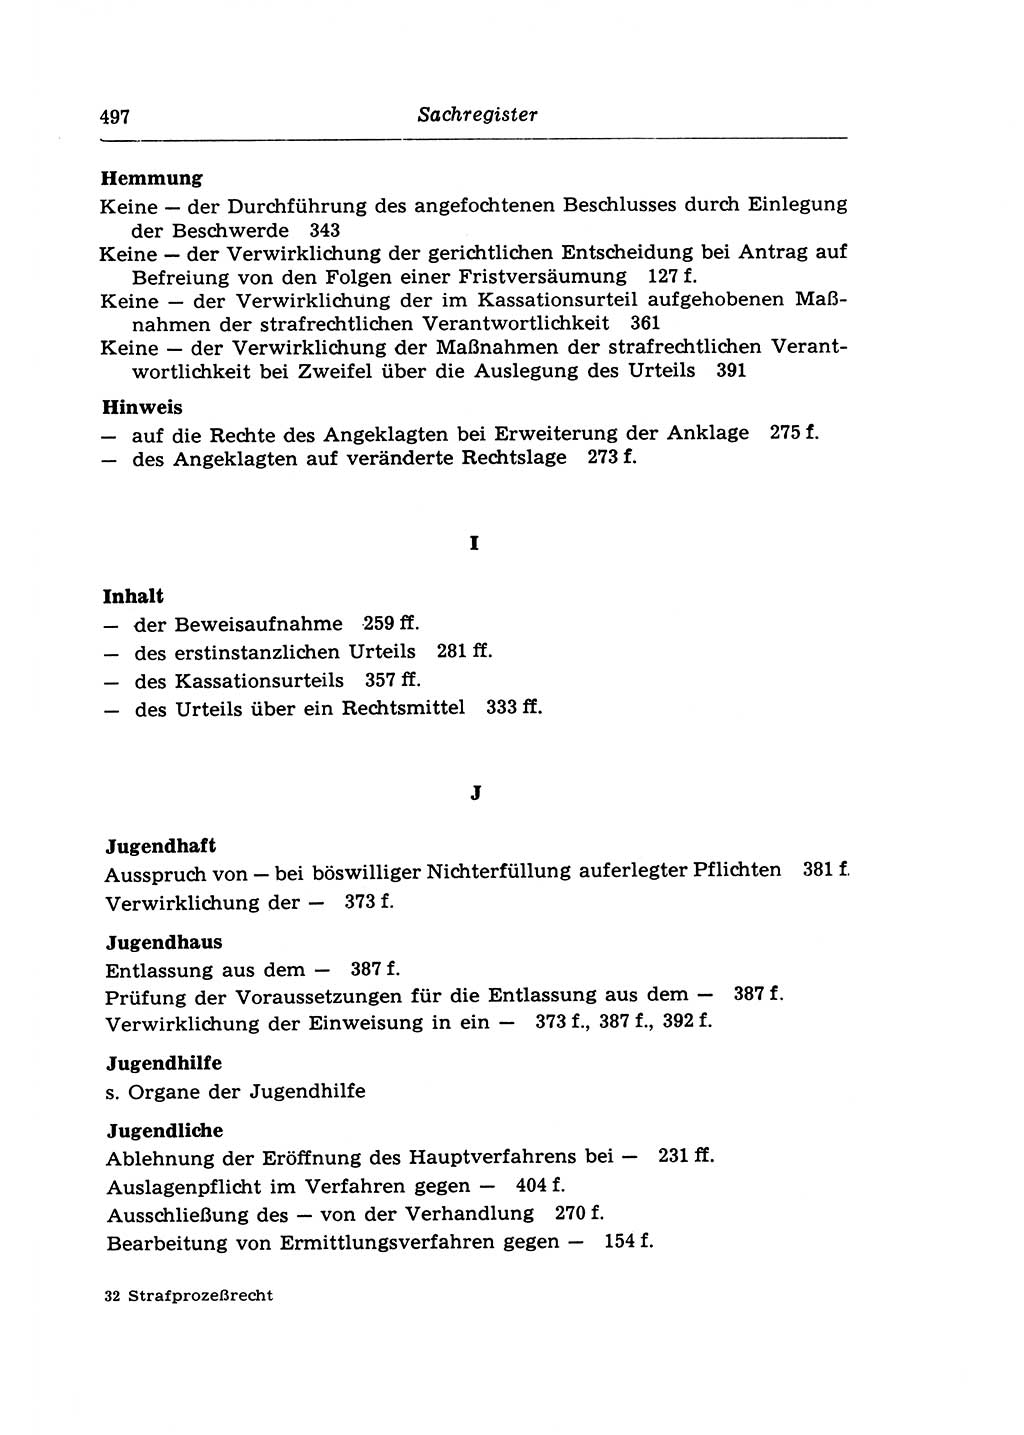 Strafprozeßrecht der DDR (Deutsche Demokratische Republik), Lehrkommentar zur Strafprozeßordnung (StPO) 1968, Seite 497 (Strafprozeßr. DDR Lehrkomm. StPO 19688, S. 497)